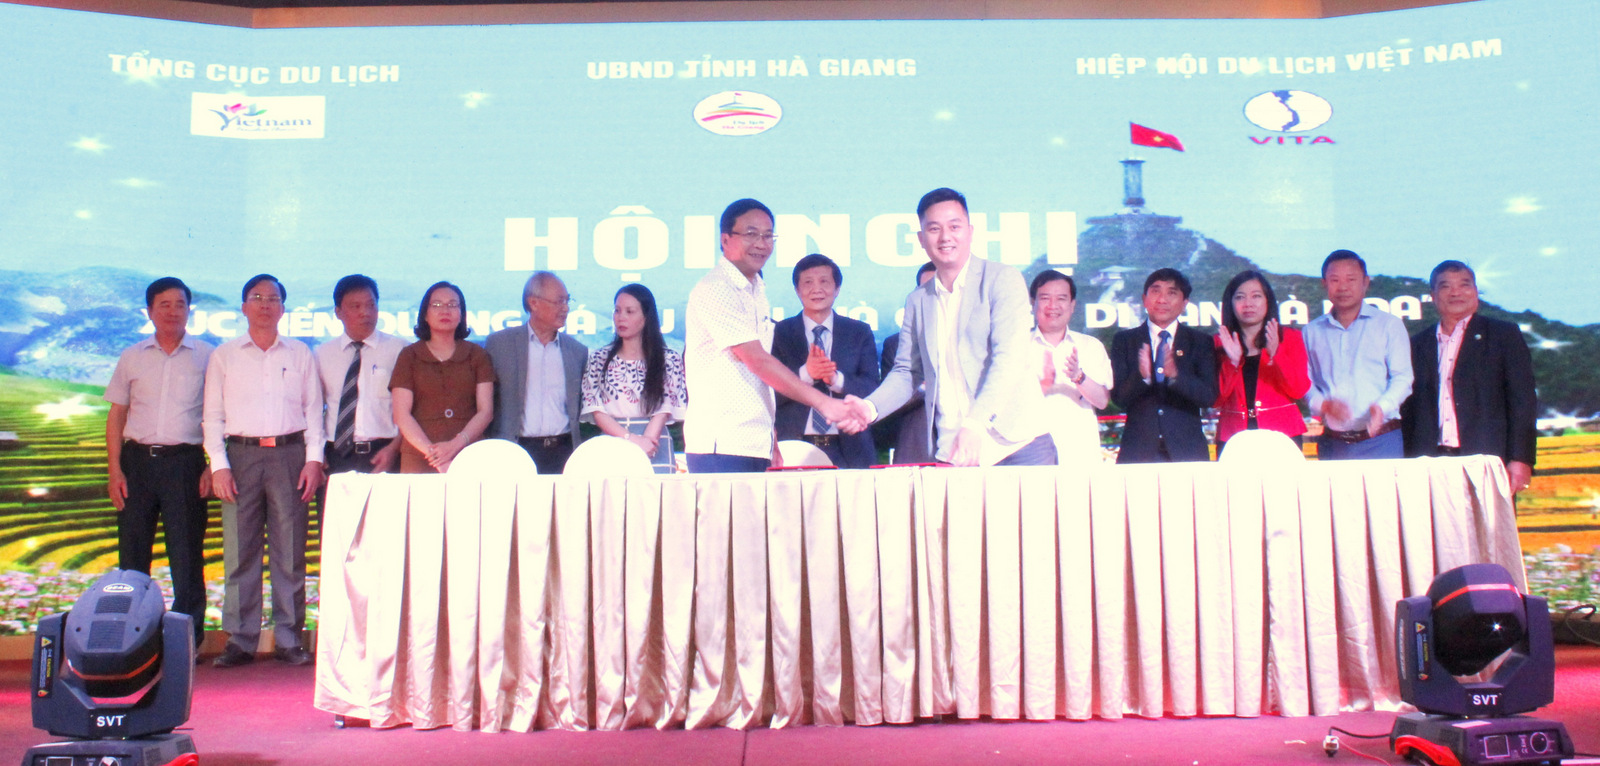 Doang nghiệp Hà Giang ký kết hợp tác du lịch với doanh nghiệp lữ hành khu vực miền Trung